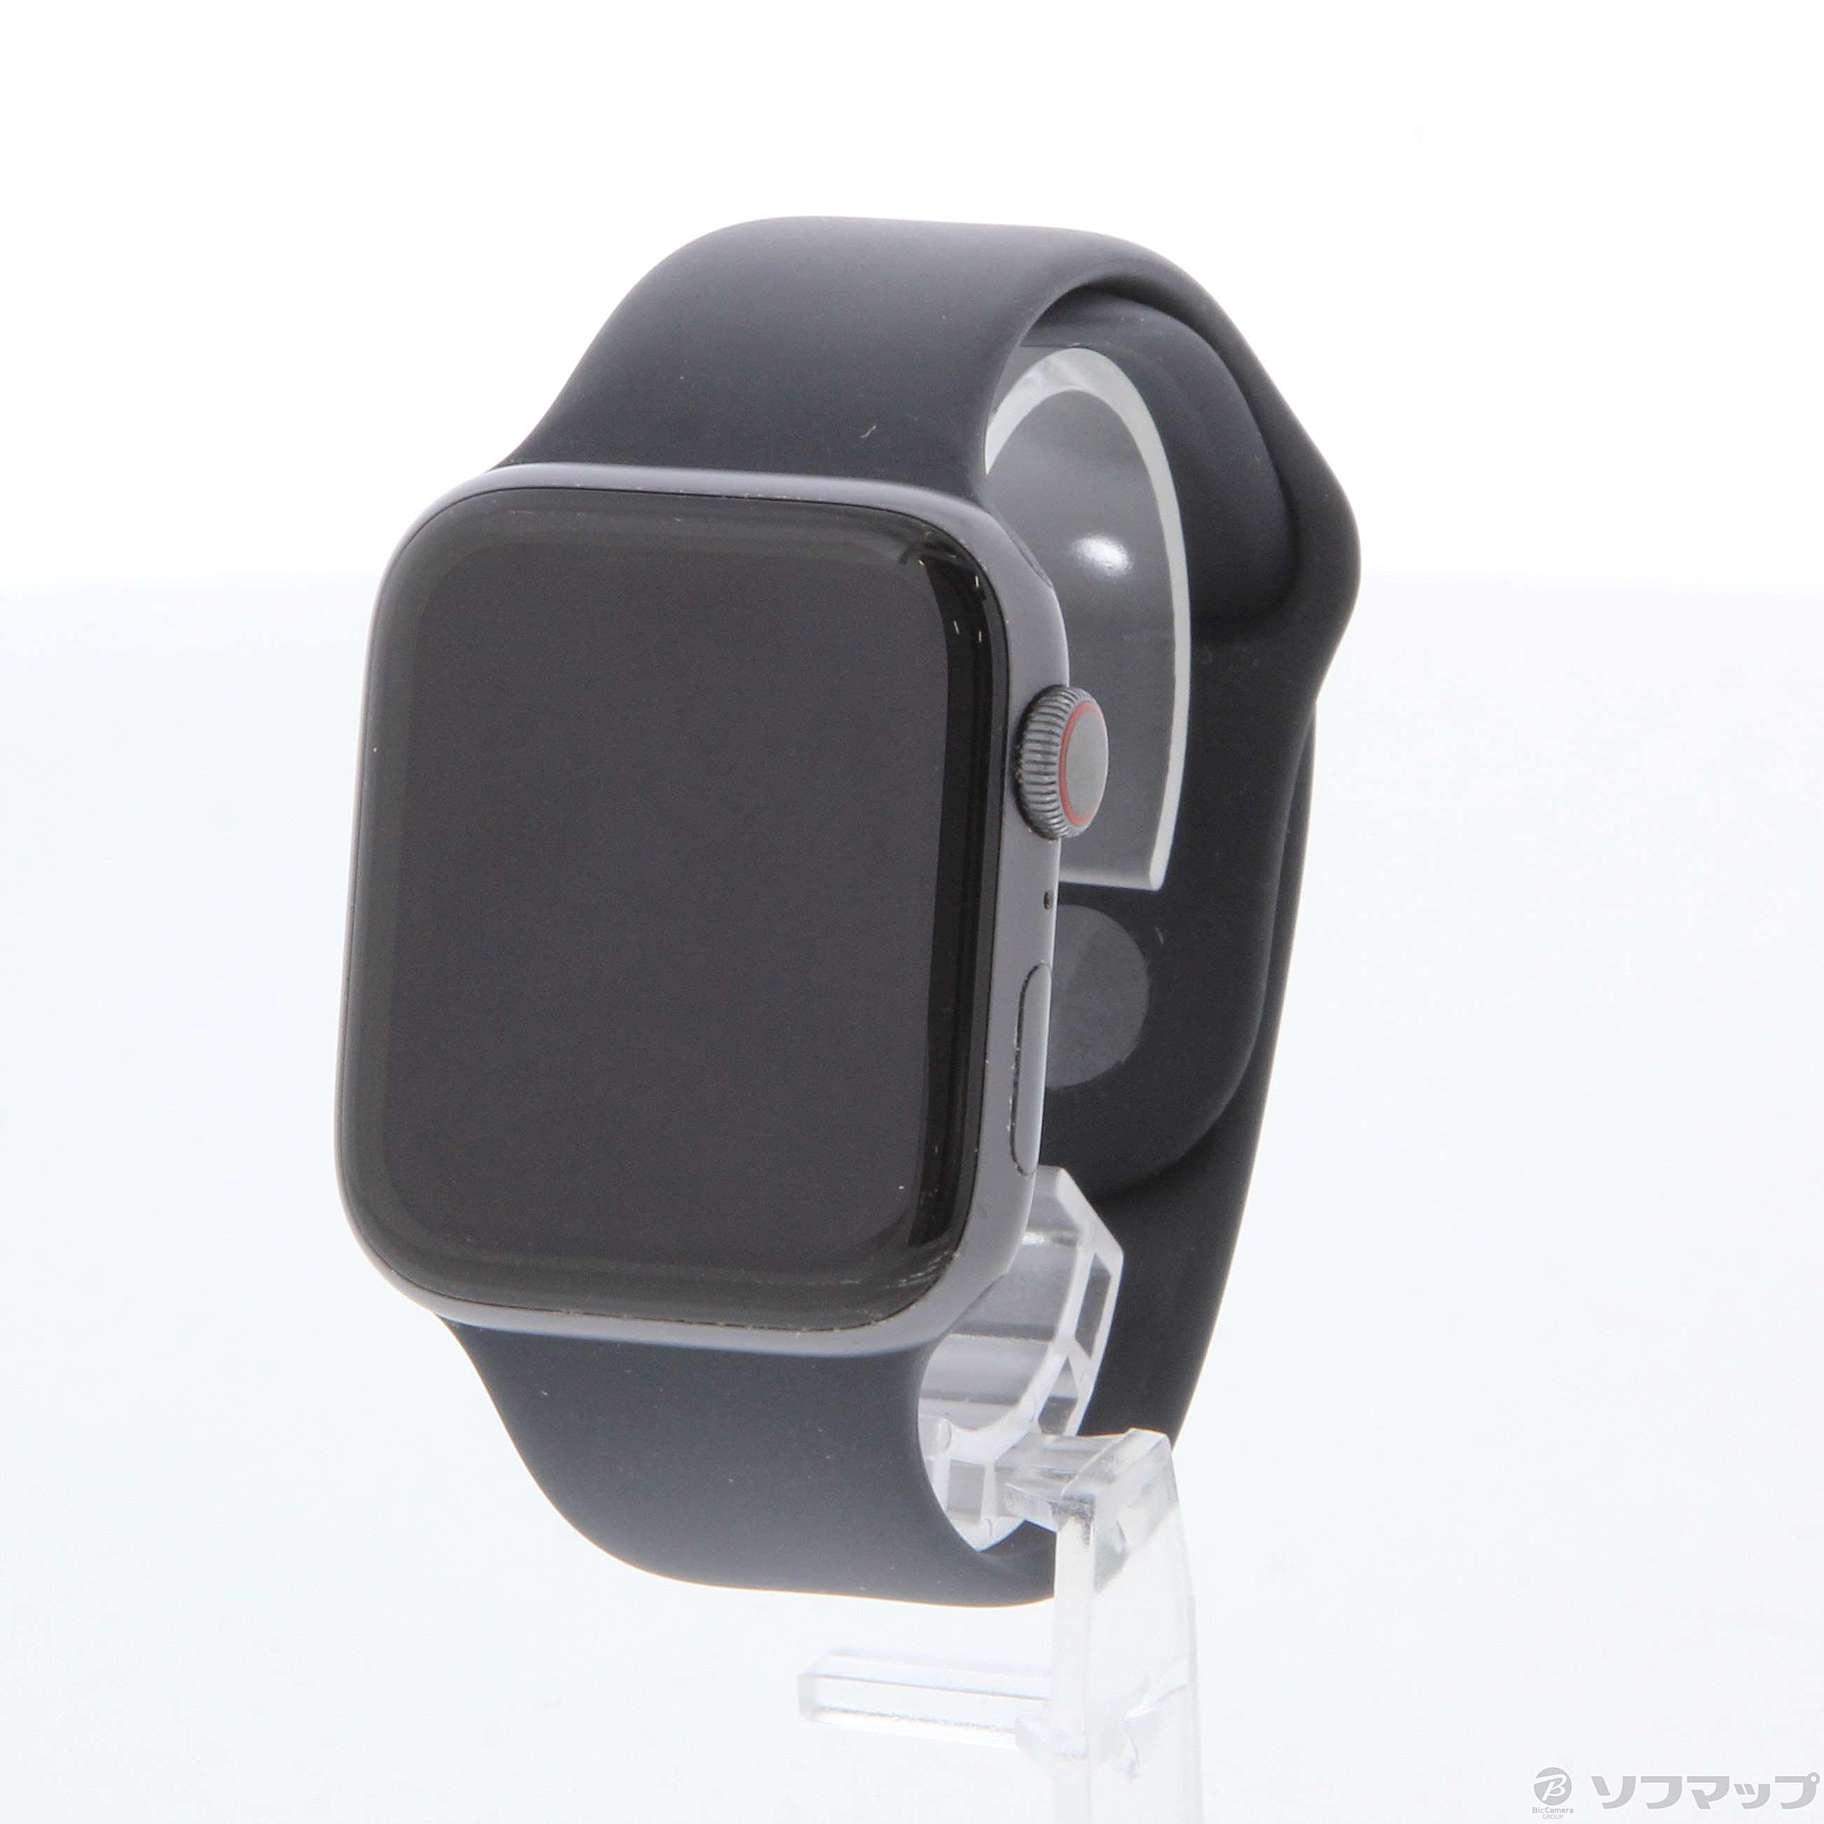 〔中古品〕 Apple Watch Series 4 GPS + Cellular 44mm スペースグレイアルミニウムケース ブラックスポーツバンド